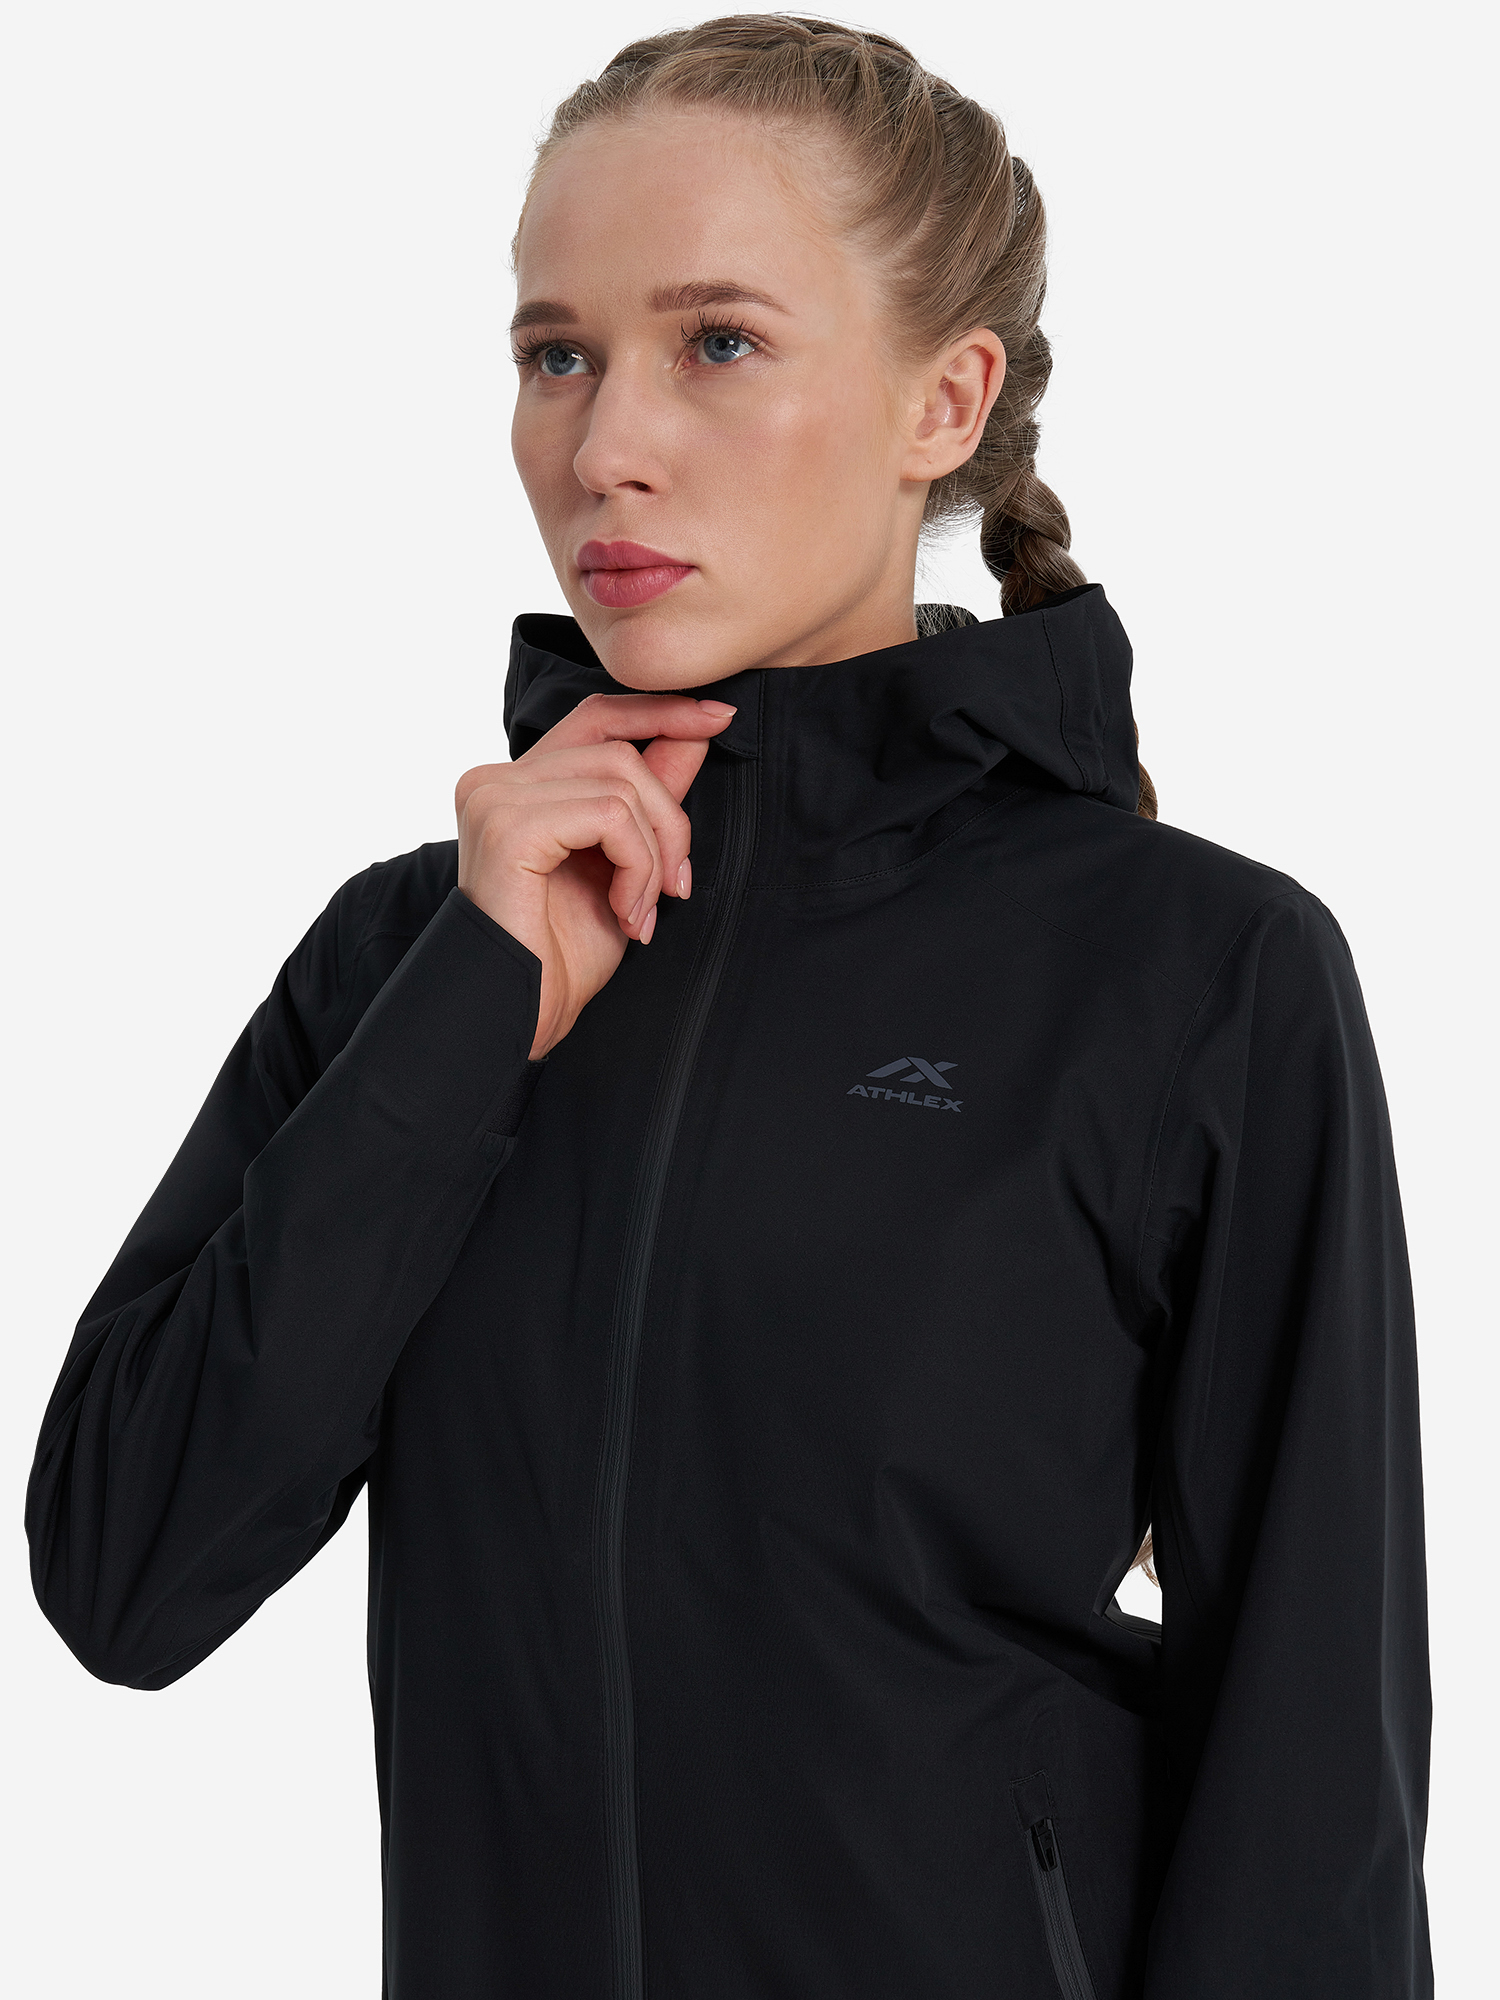 Куртка мембранная женская Athlex, Черный